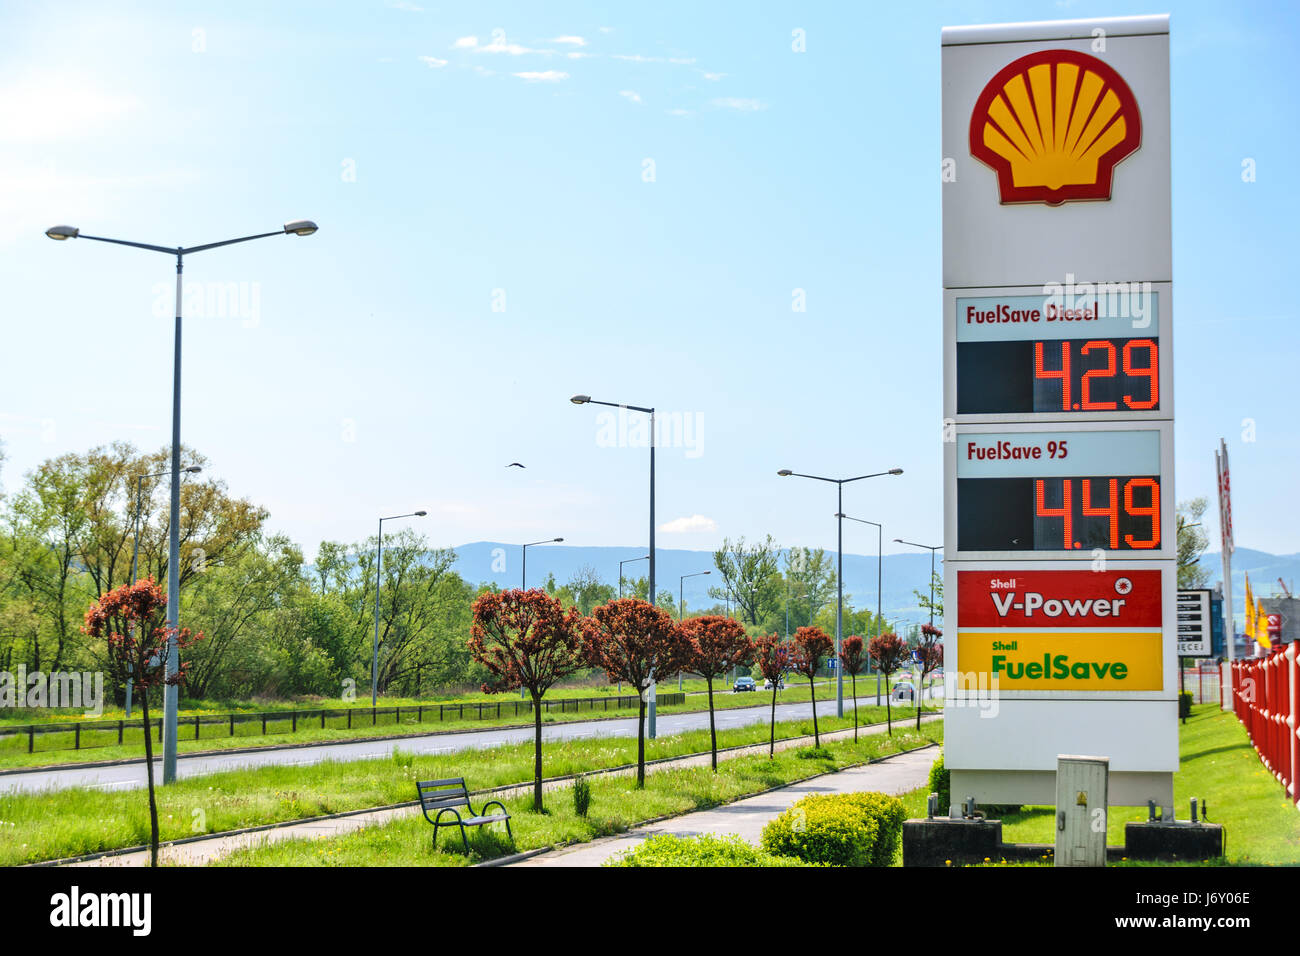 Nowy Sacz, Polonia - 15 Maggio 2017: Segno di Royal Dutch Shell, che è una delle più grandi società petrolifere del mondo. Foto Stock